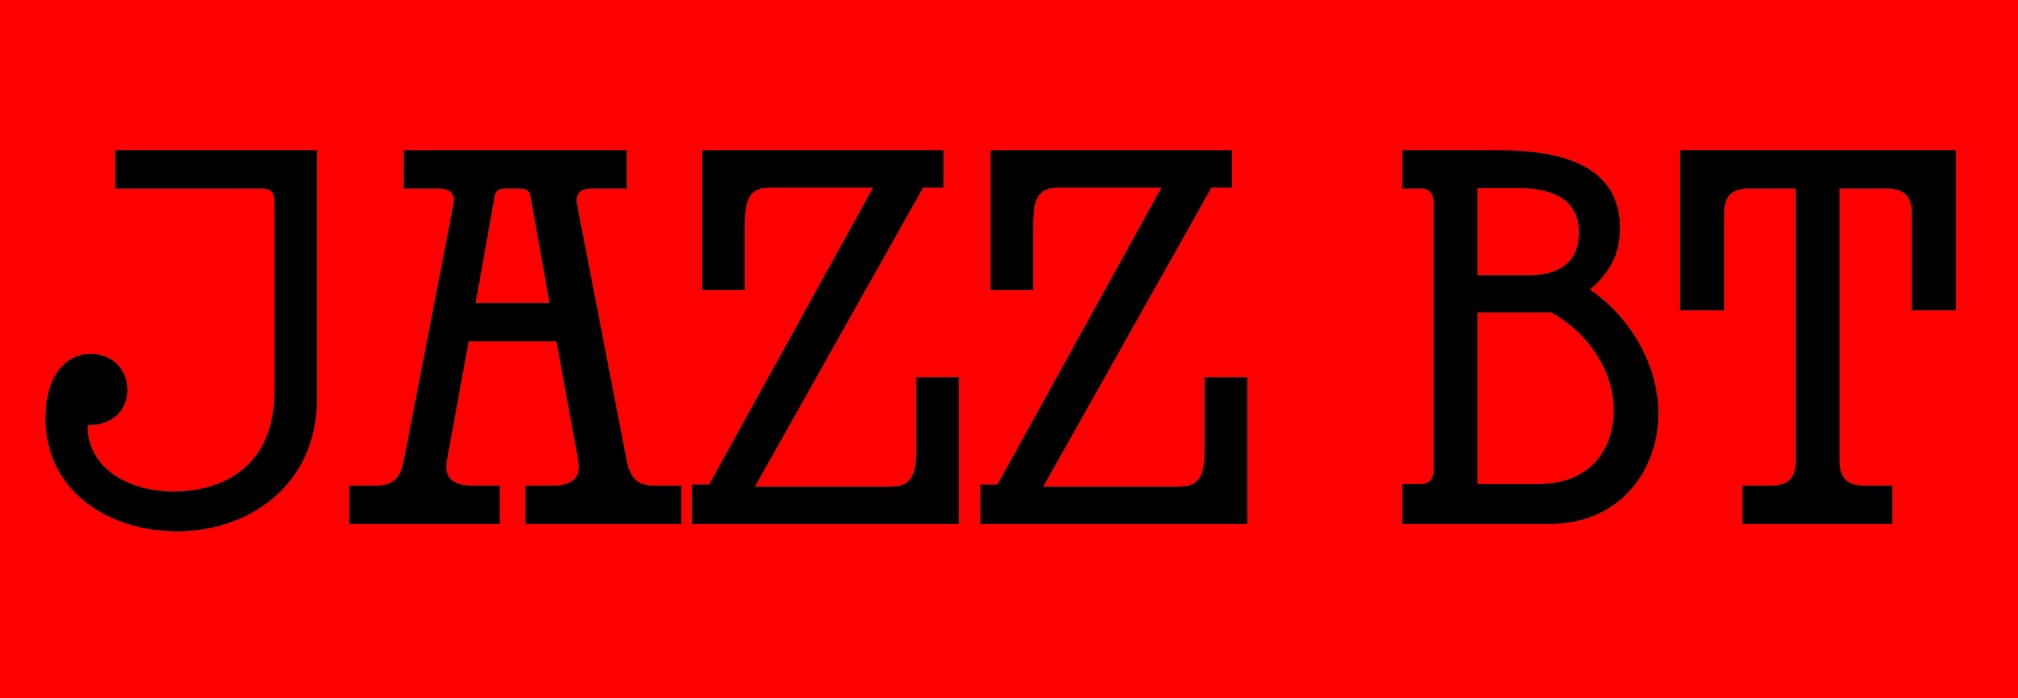 Jazz Bt Regular Font preview